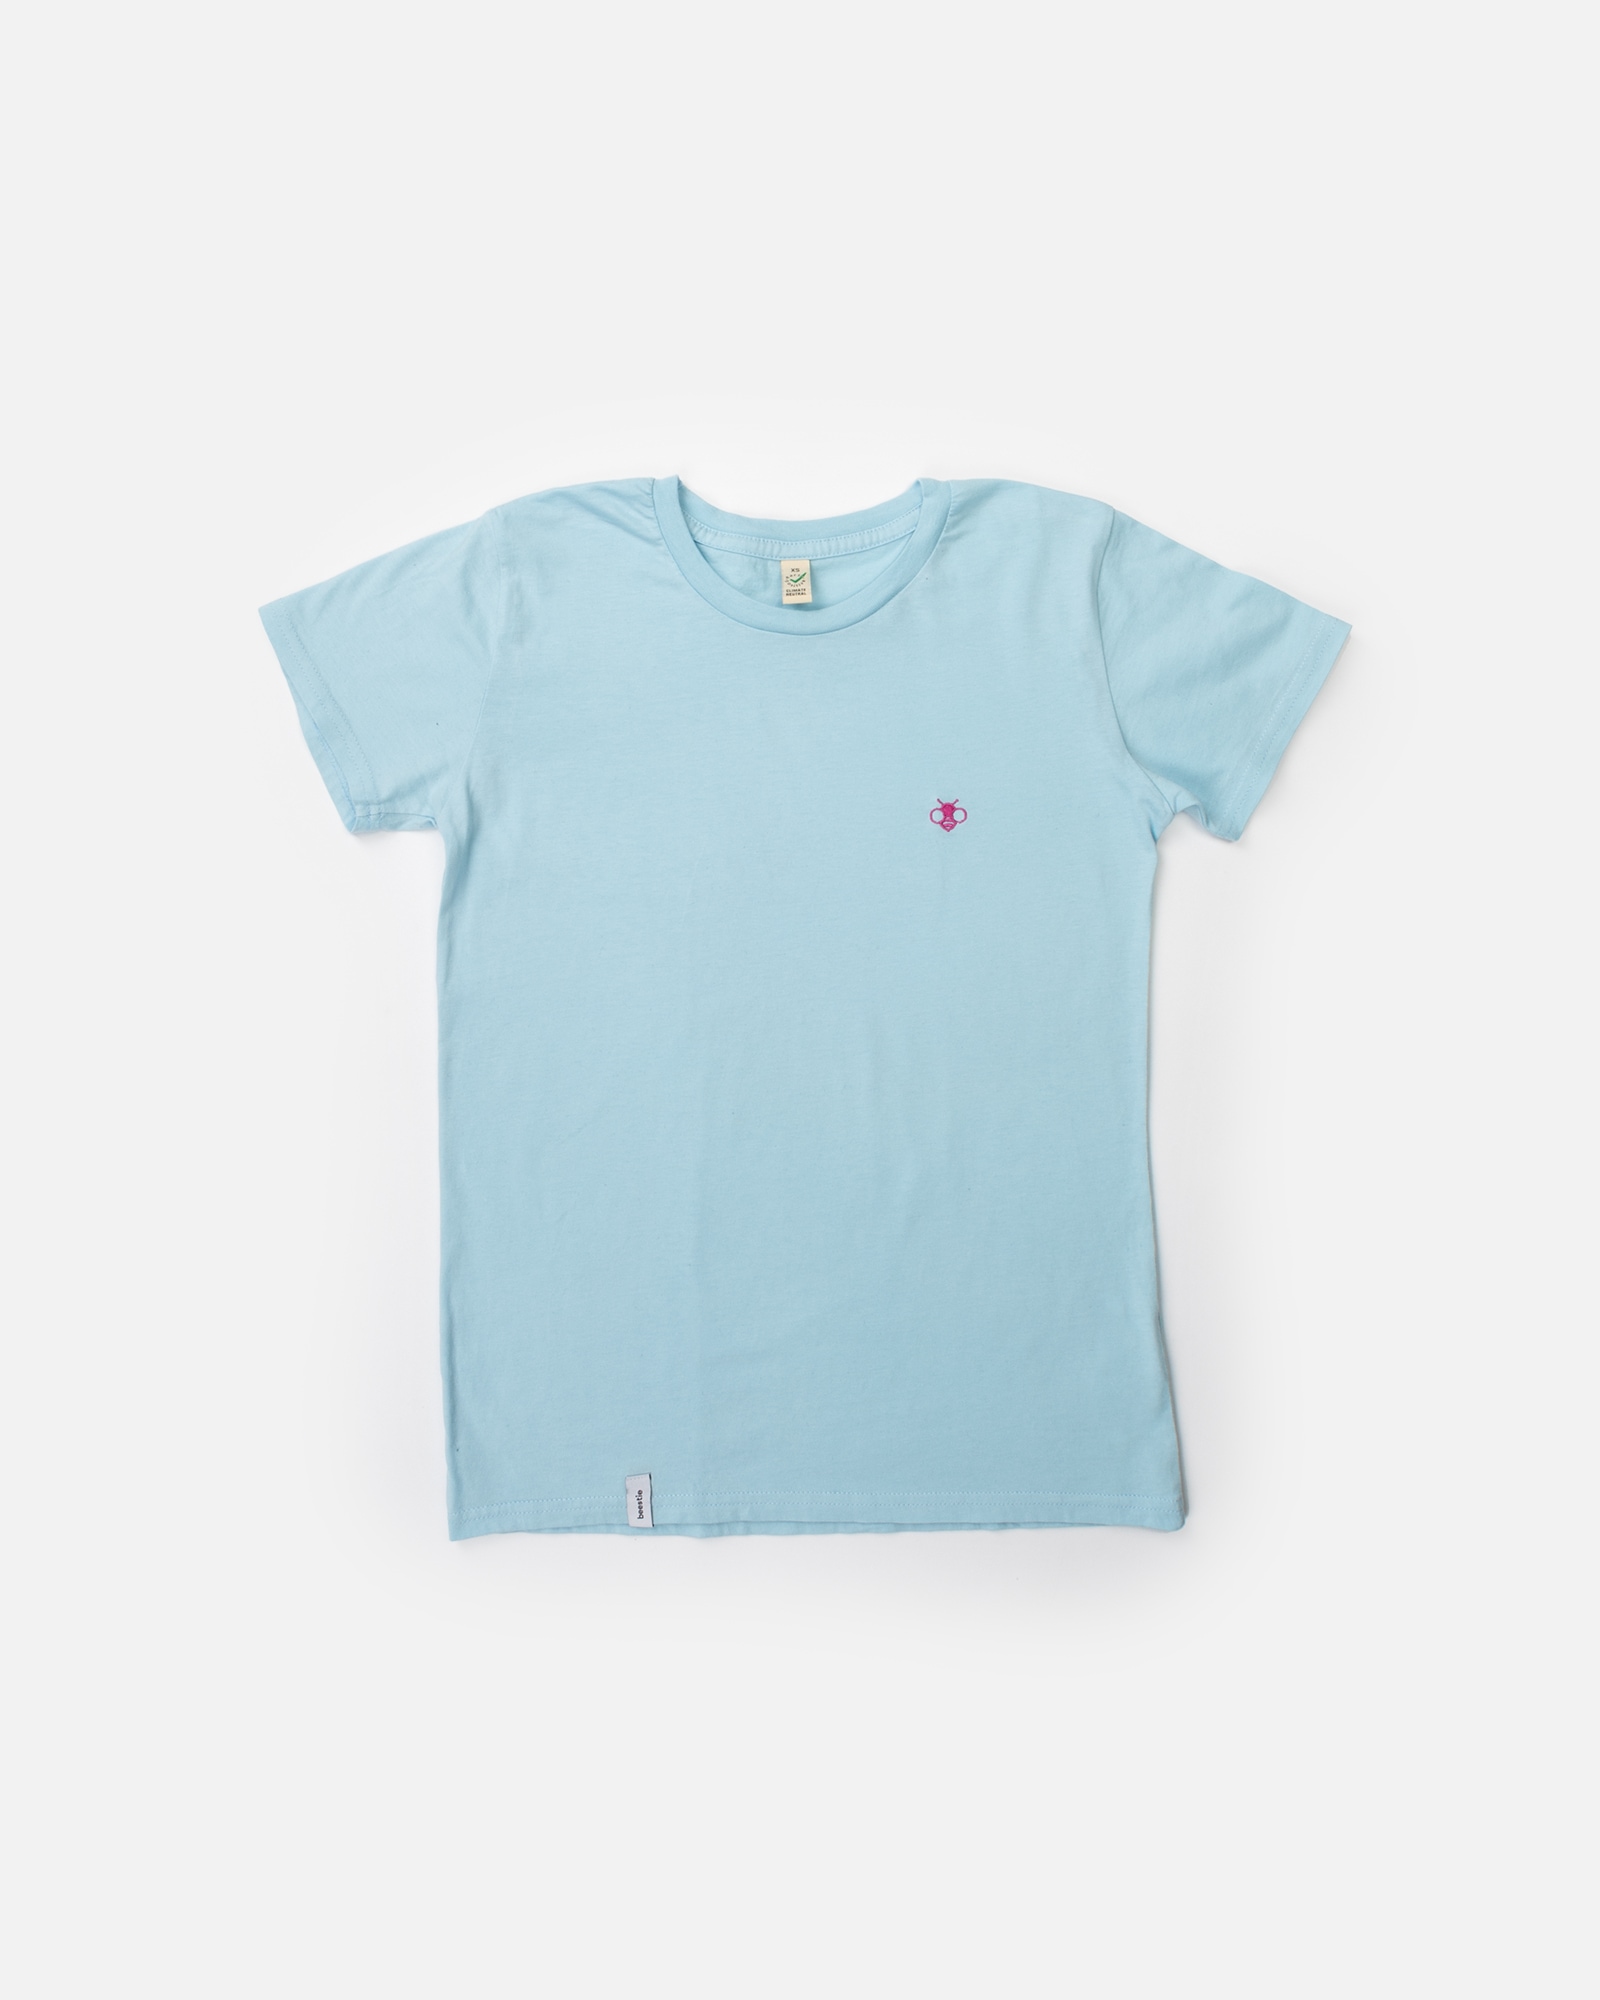 Produktbild vom beestie Organic Color T-Shirt Women in der Farbe Aquamarin